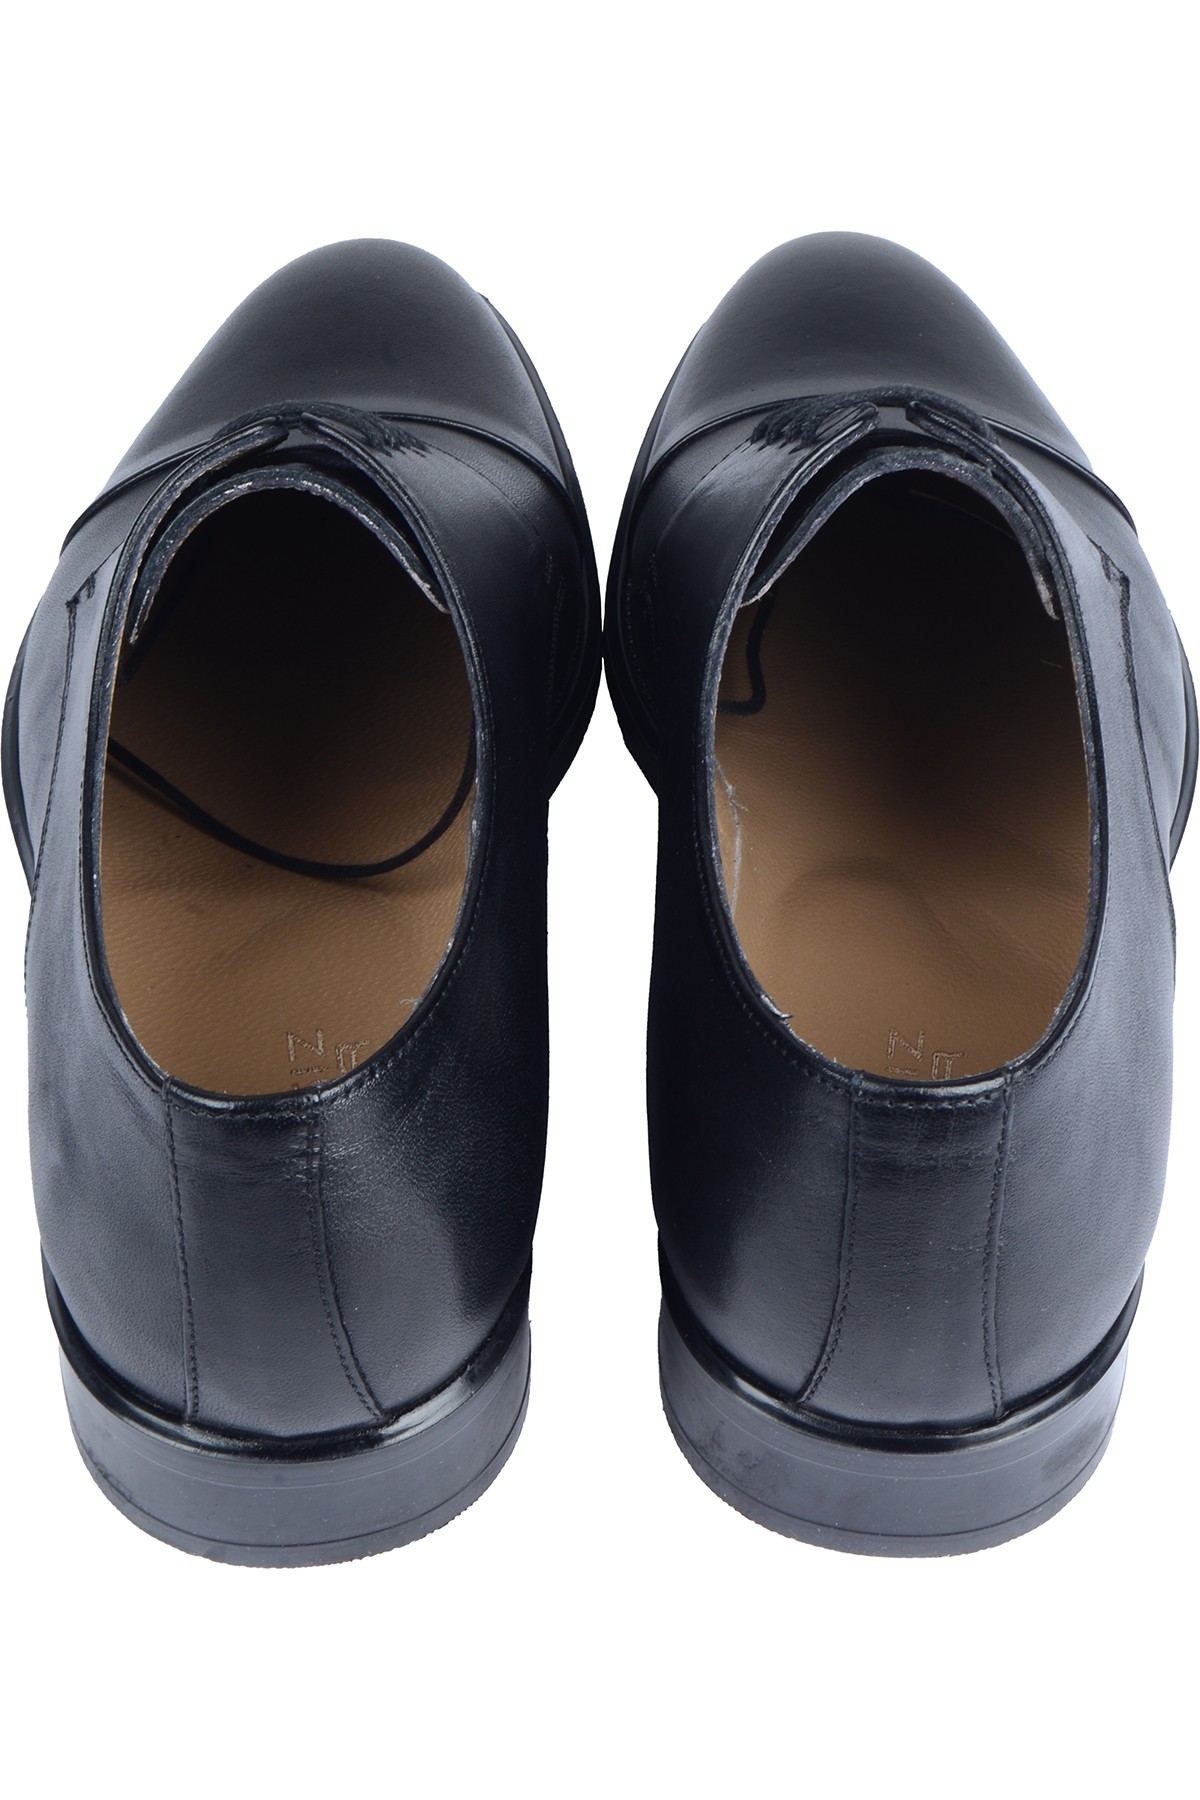 34681-1 Erkek Bağcıklı Çift Yüz Deri Ayakkabı